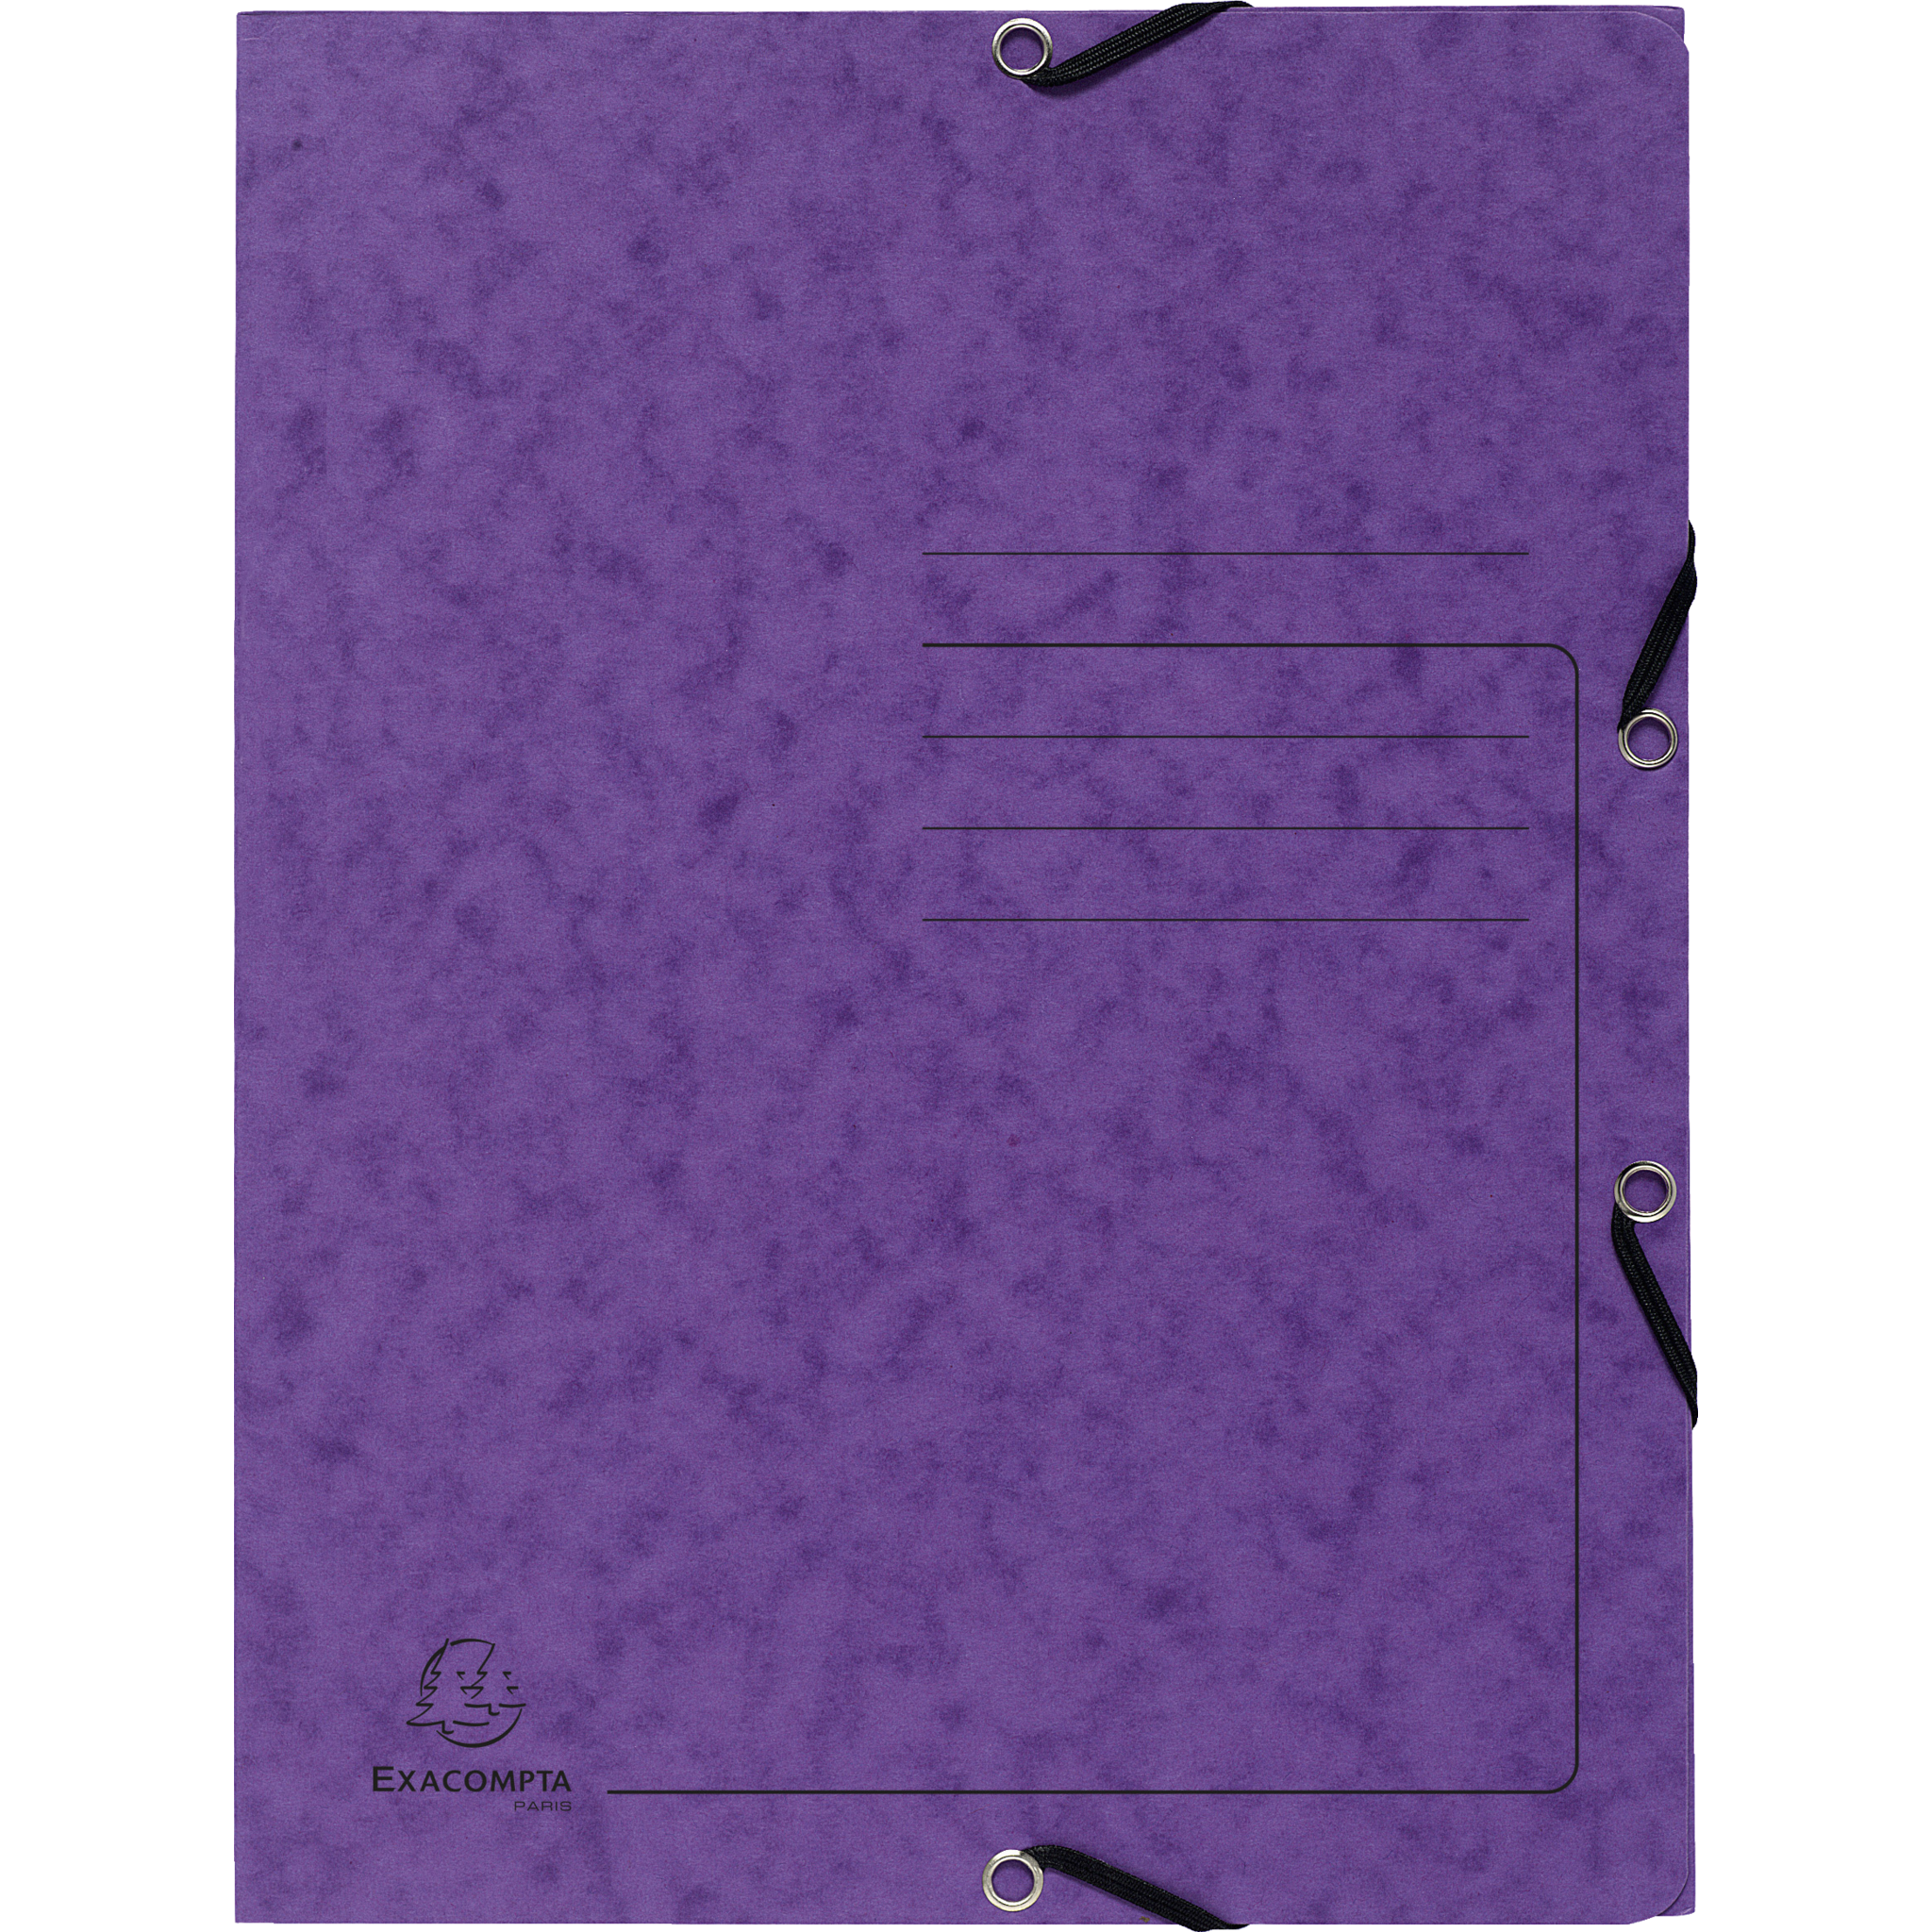 EXACOMPTA Sammelmappe mit Gummizug und 3 Klappen aus Colorspan-Karton 355g/m2 - A4 - Violett